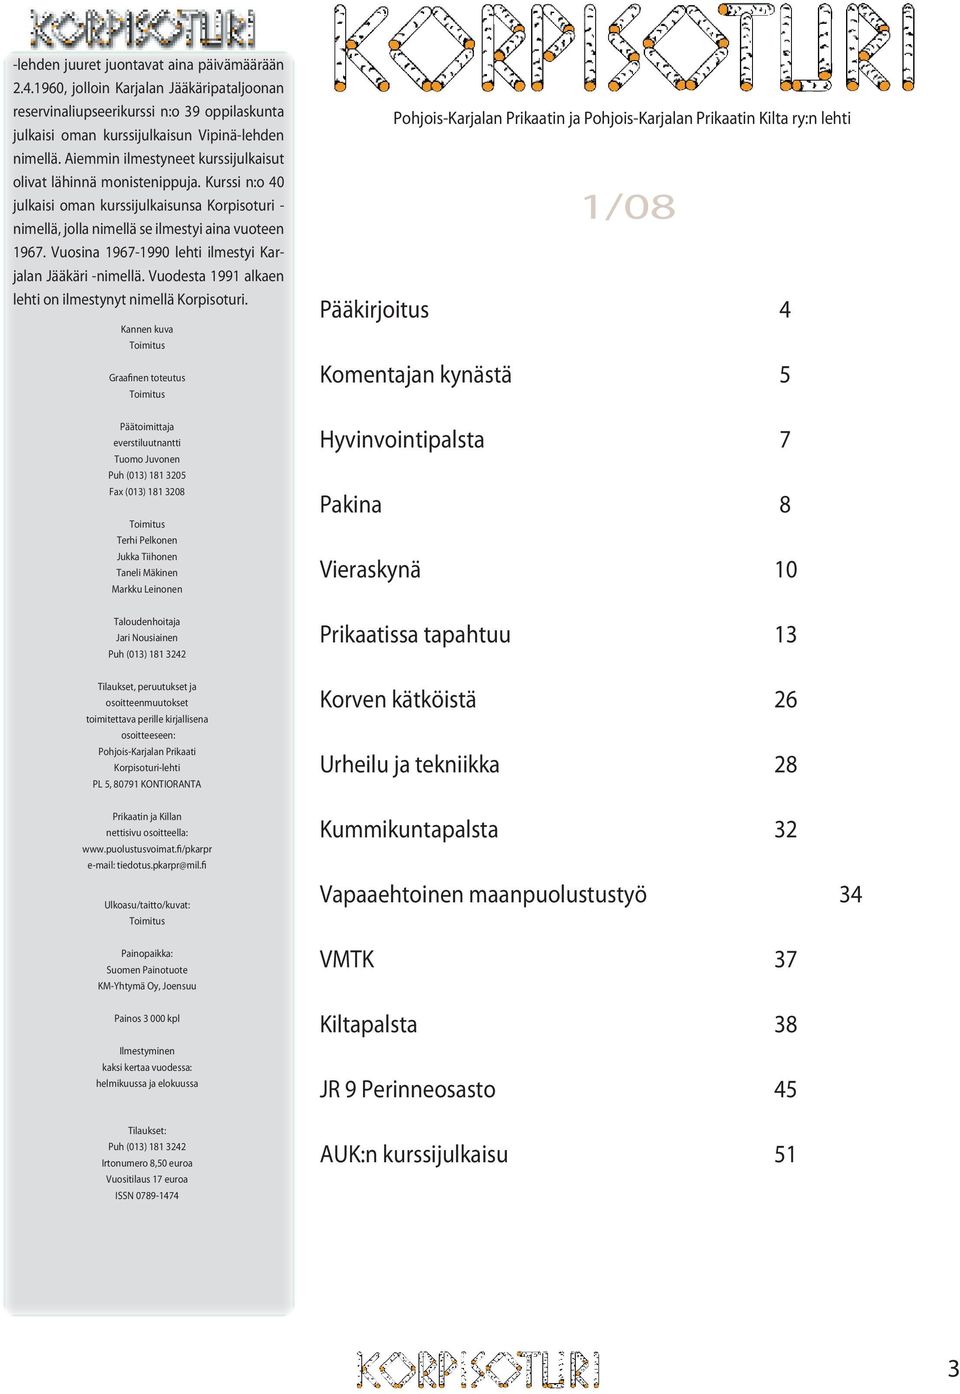 Vuosina 1967-1990 lehti ilmestyi Karjalan Jääkäri -nimellä. Vuodesta 1991 alkaen lehti on ilmestynyt nimellä Korpisoturi.